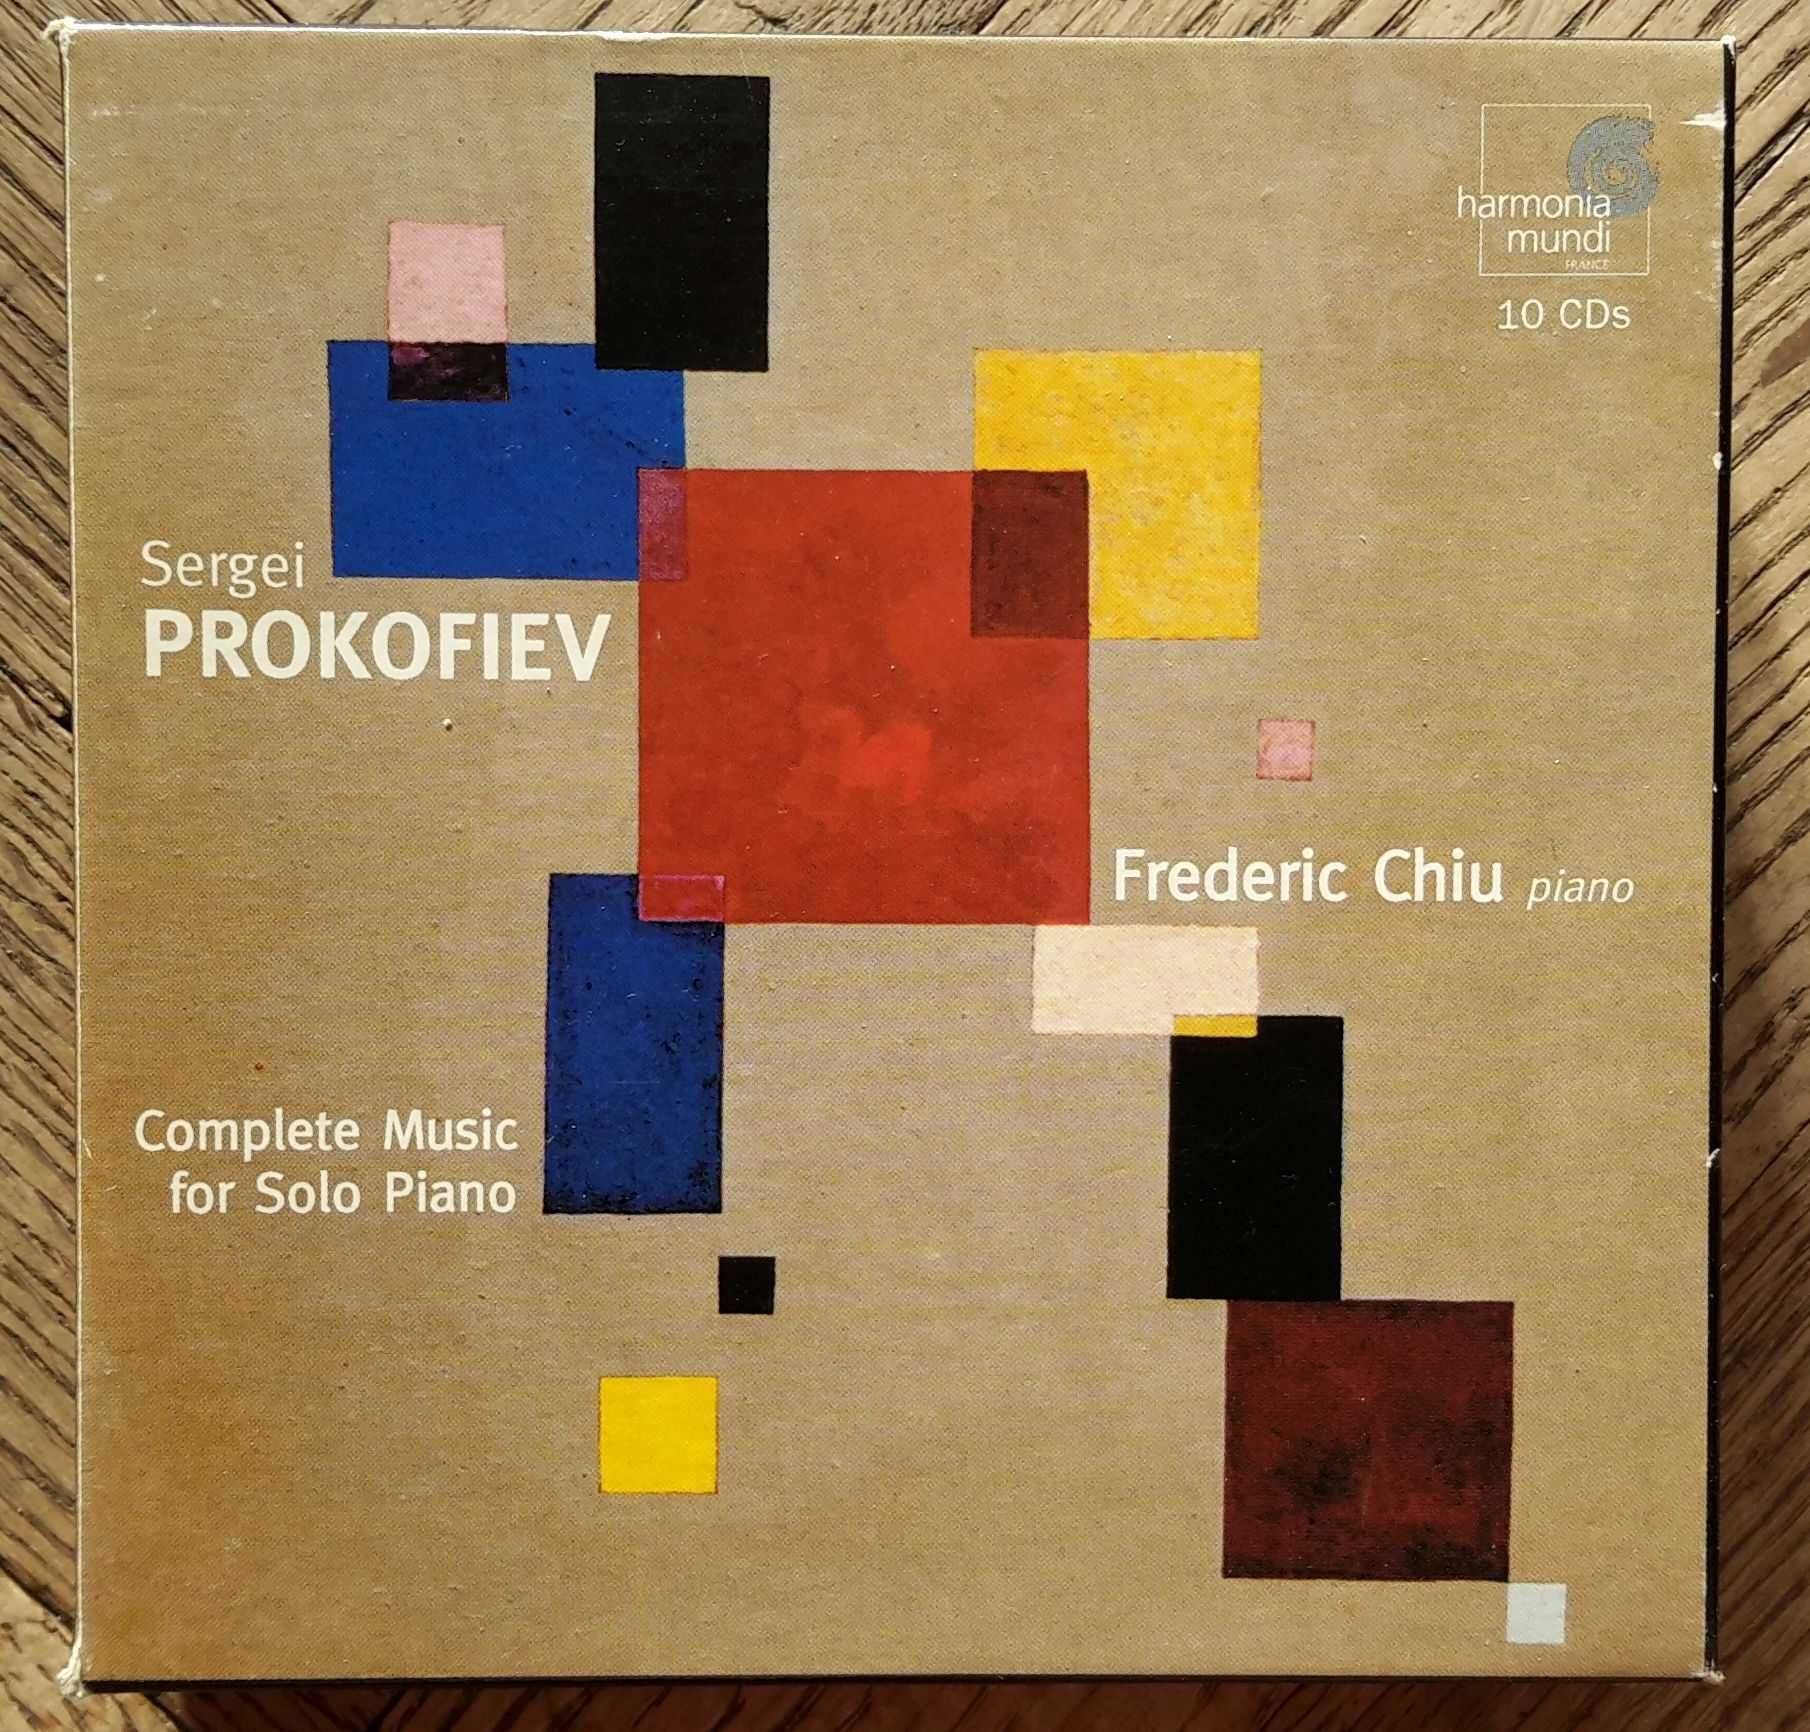 Sergei Prokofiev: Complete Music for Solo Piano, Frederic Chiu, 10x CD